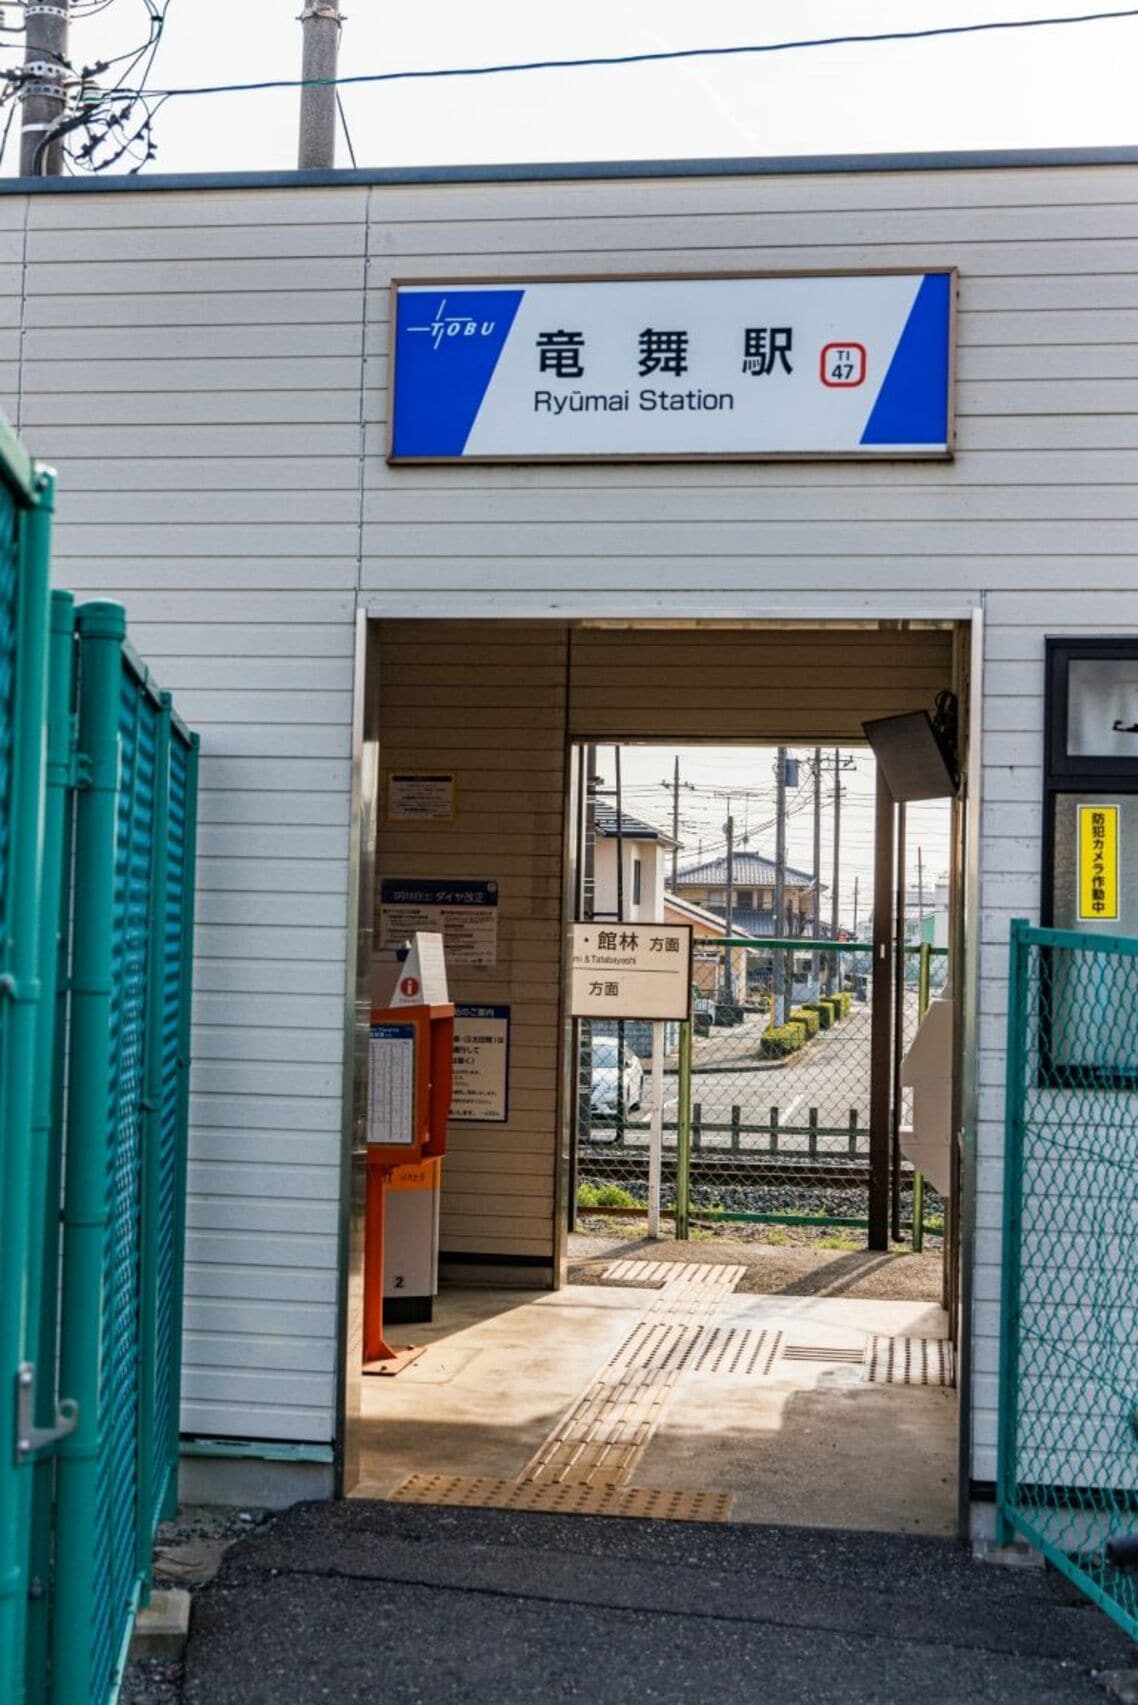 小泉線では太田市内にある竜舞駅のみが